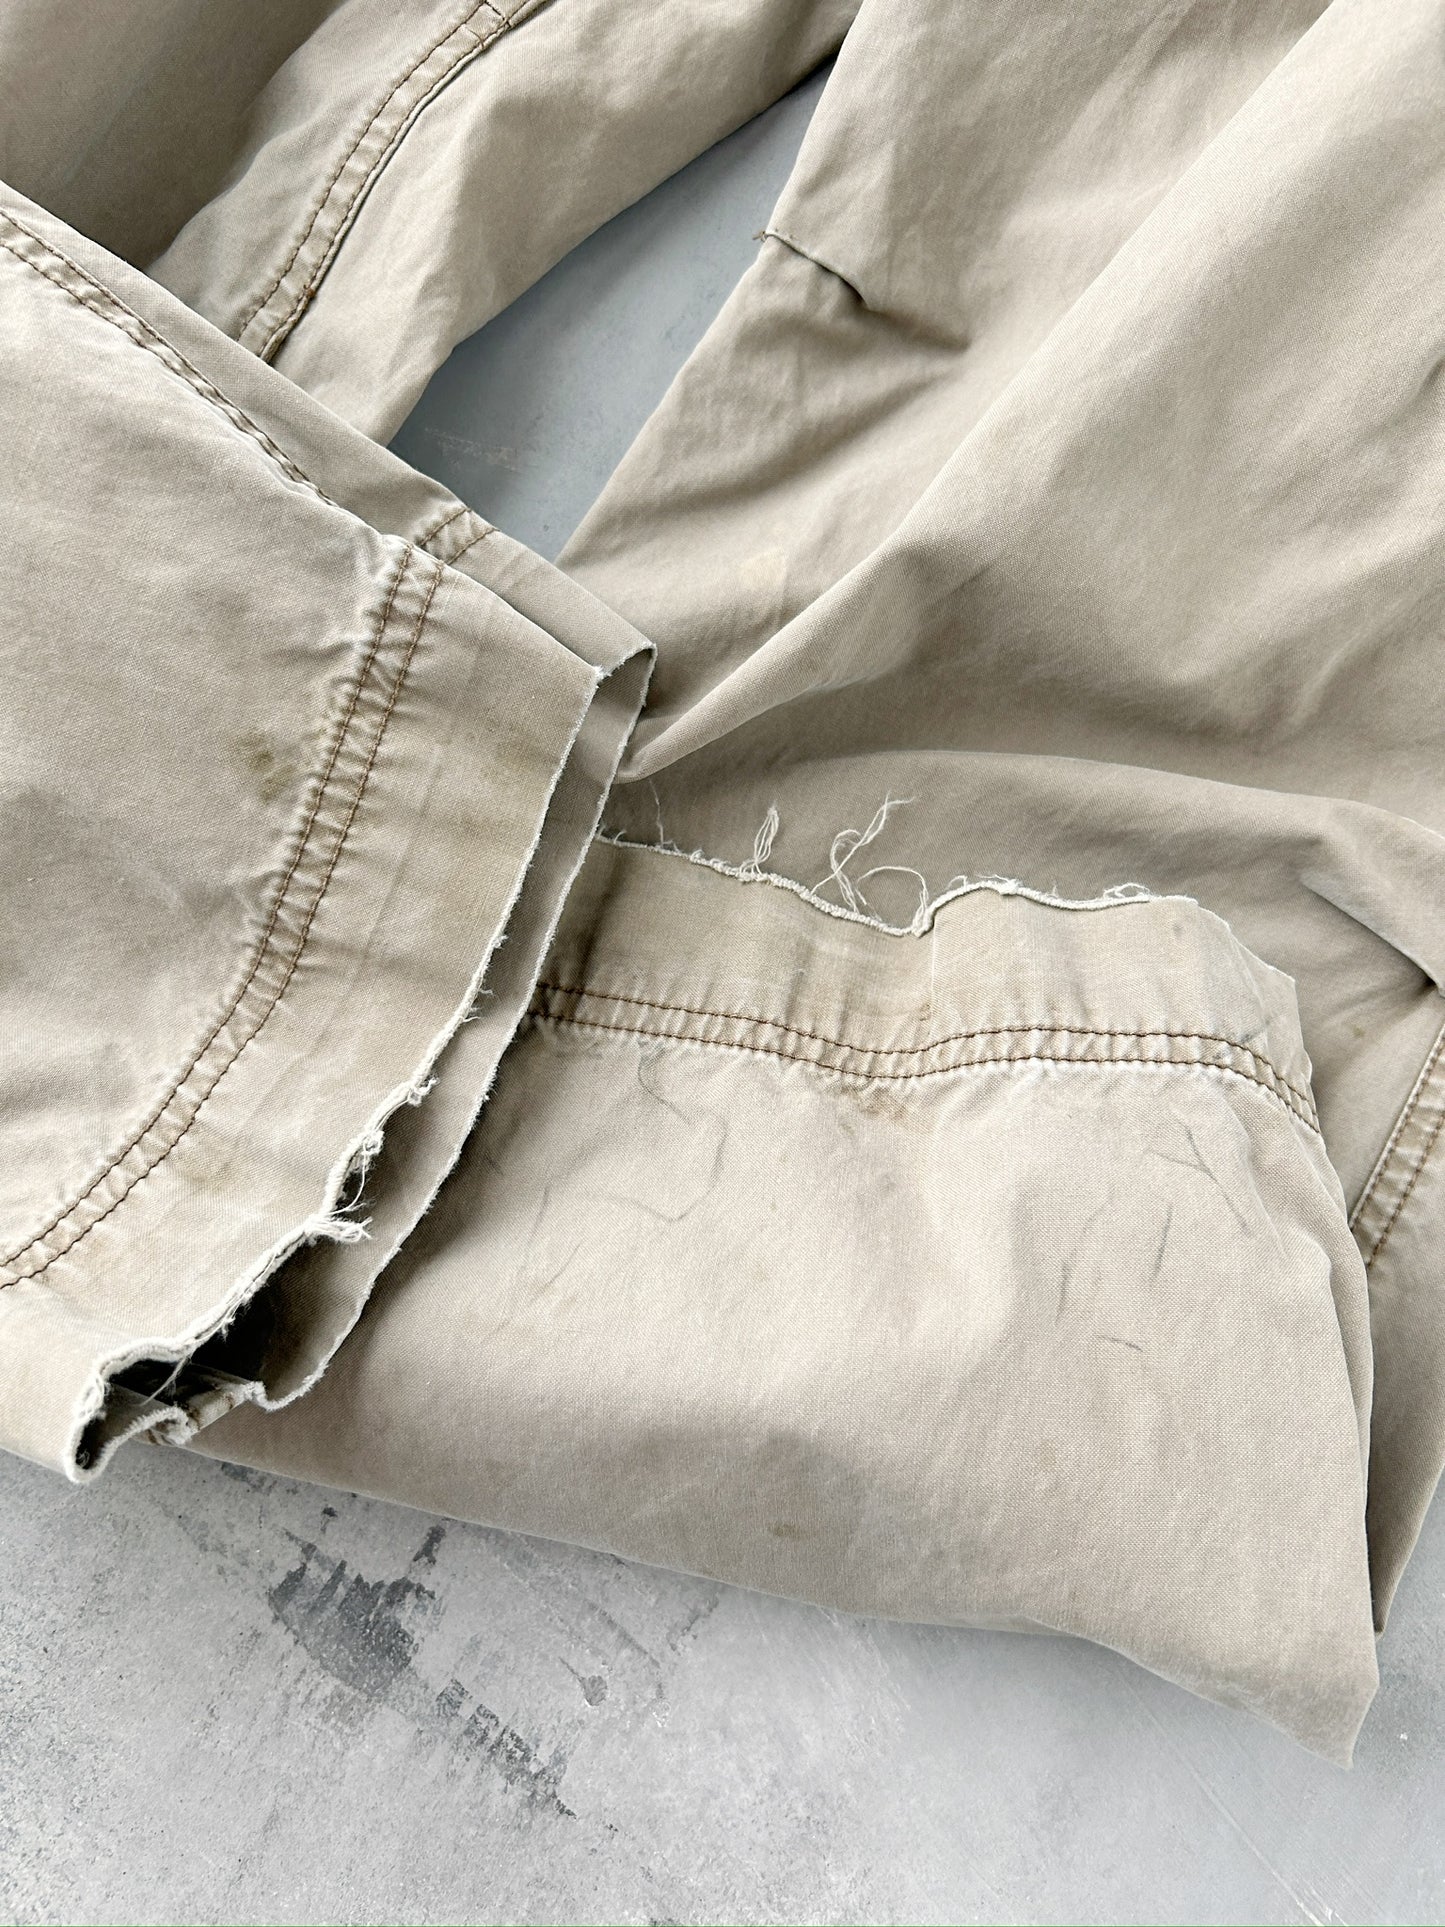 Khaki Cargo Pants '04 - 30/32 x 29